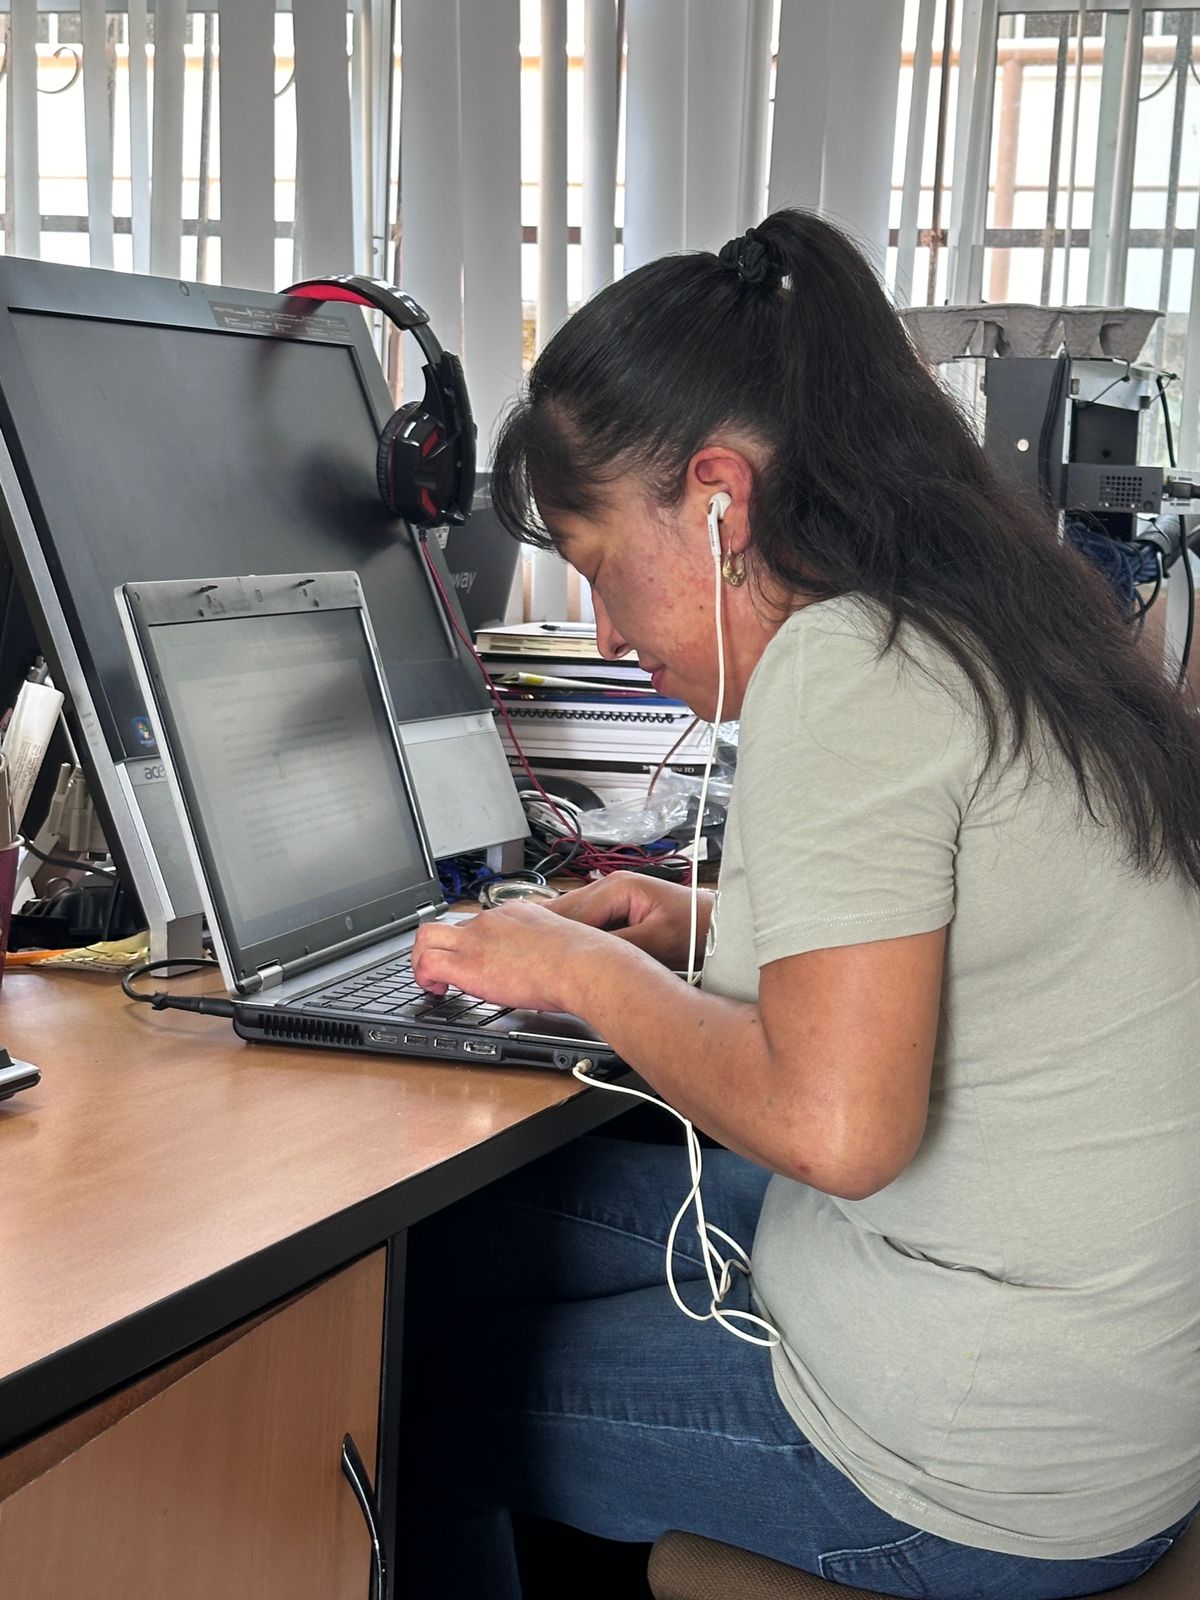 Una persona sentado frente a una computadora Descripción generada automáticamente con confianza media